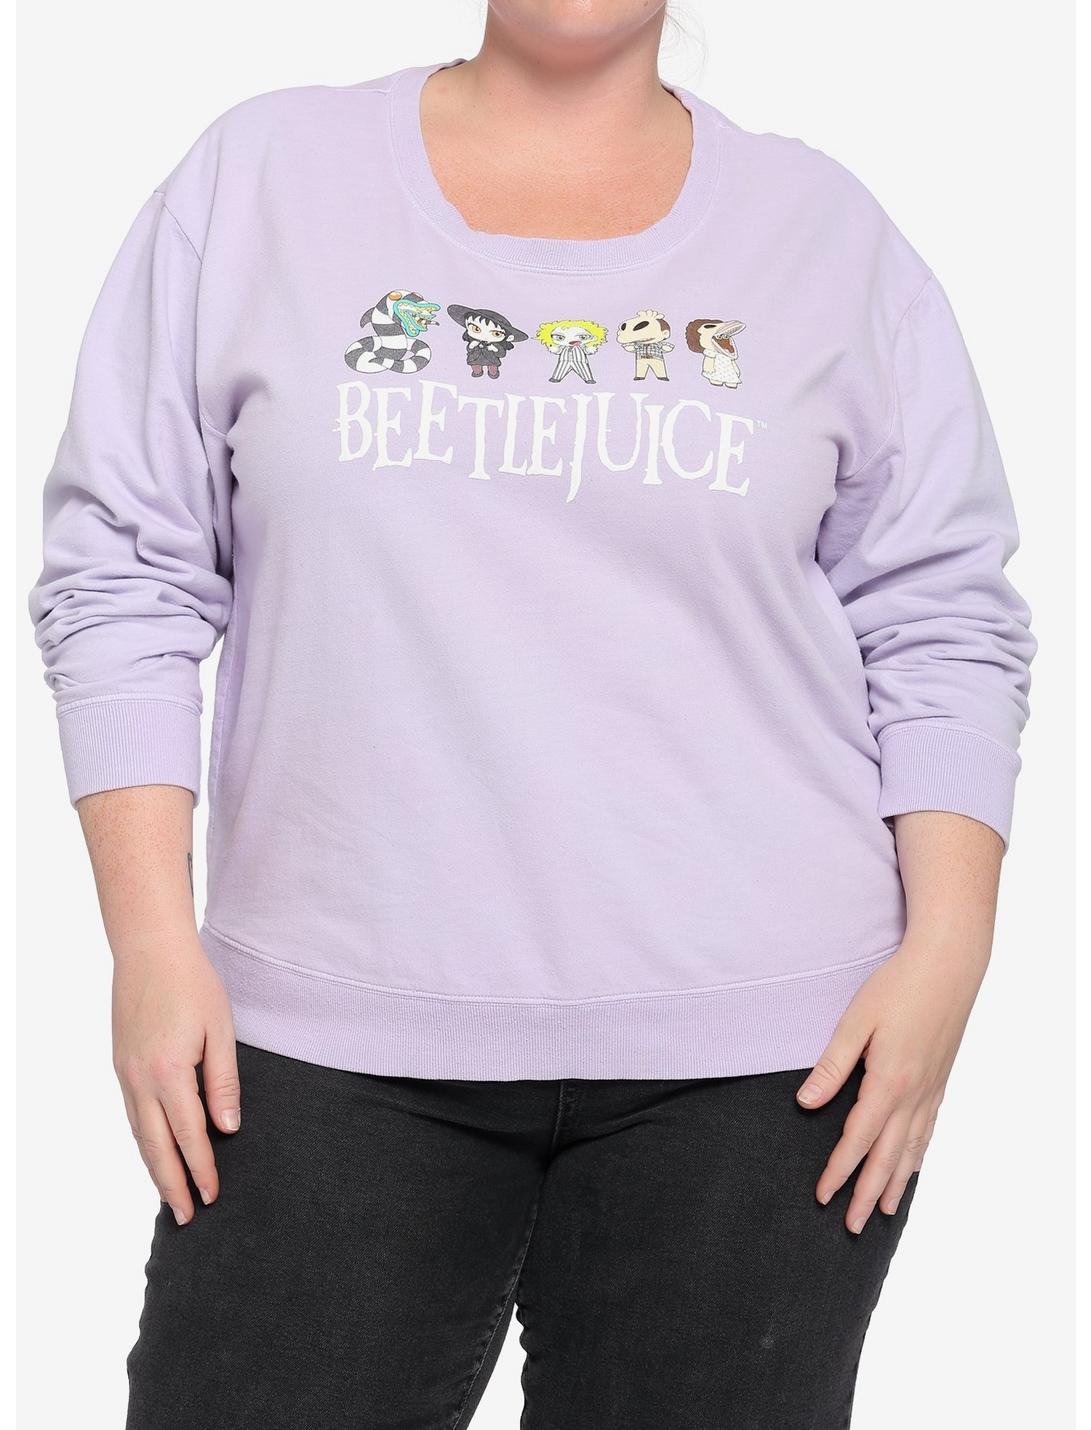 Beetlejuice Chibi Lavender Girls Sweatshirt Plus Size, MULTI, hi-res